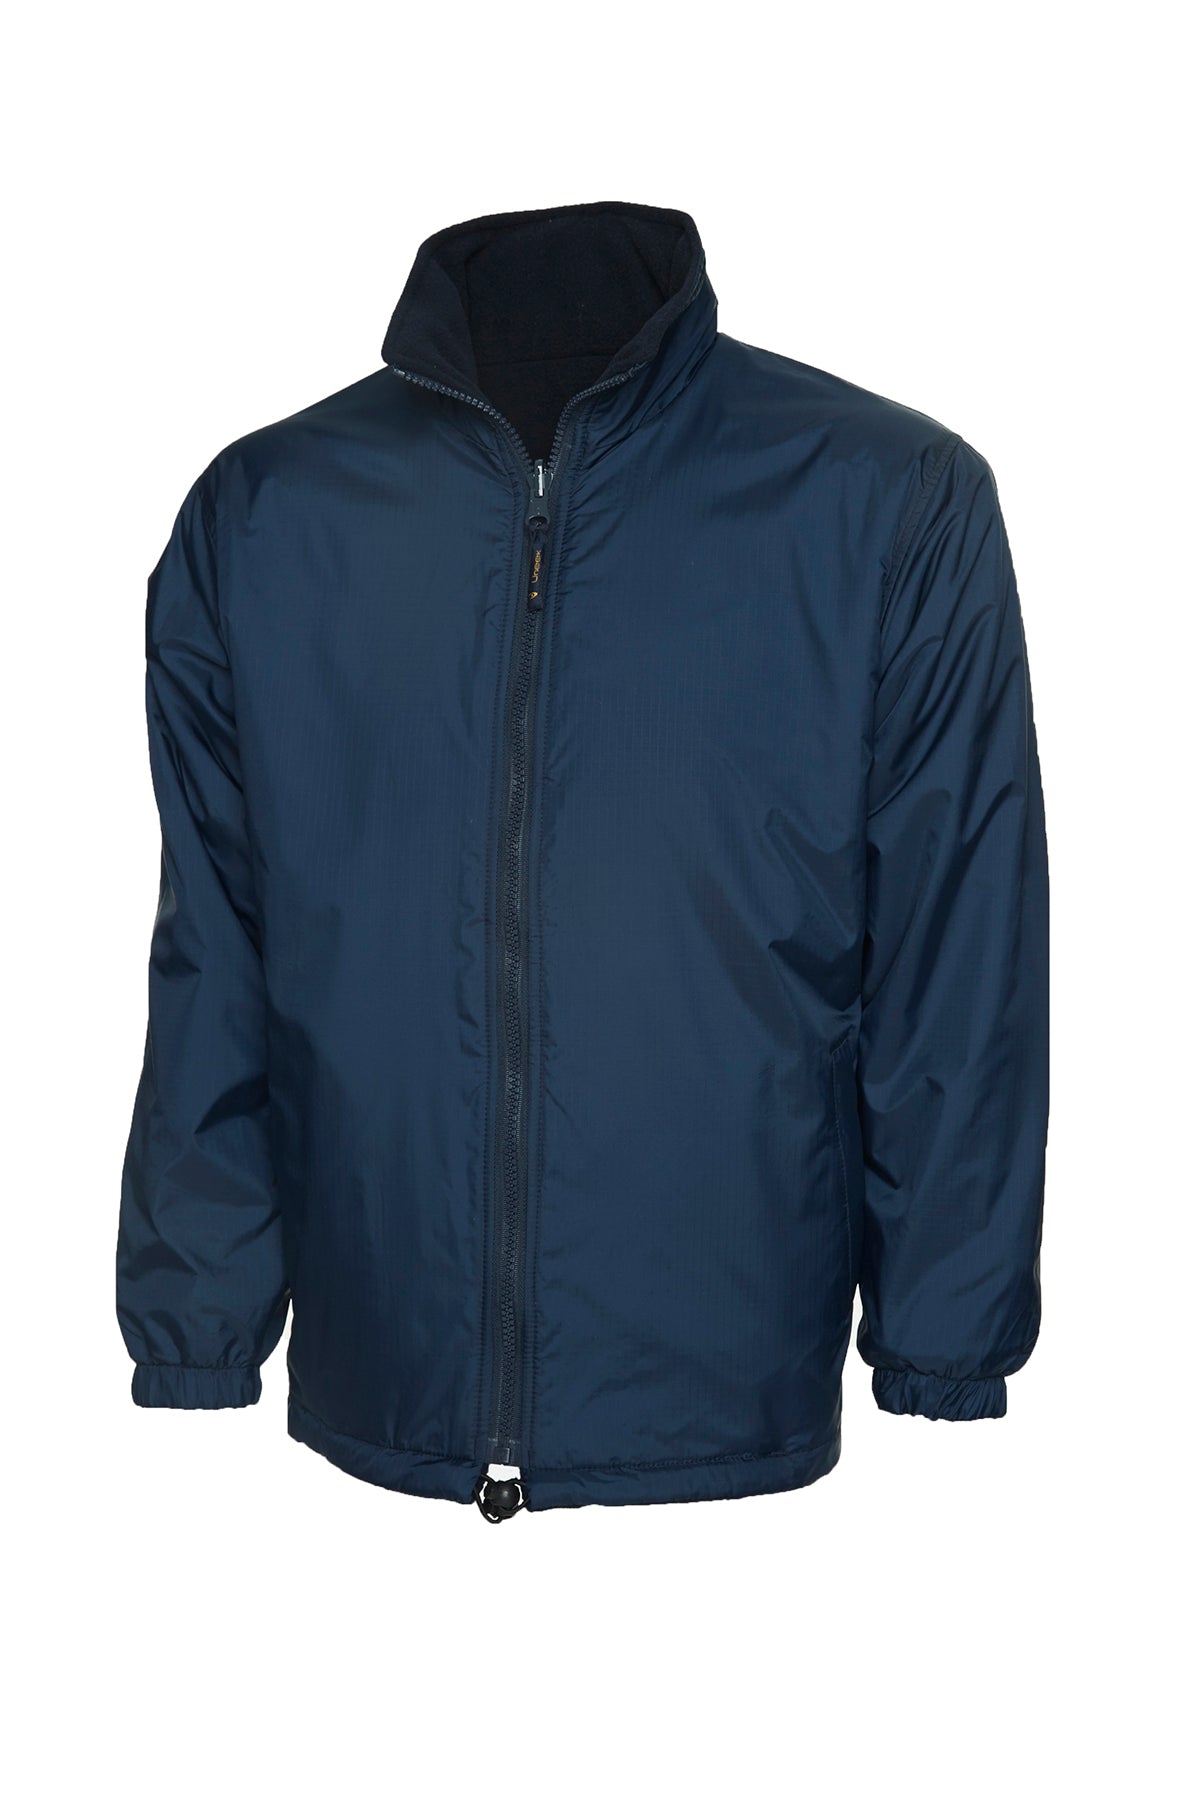 Uneek Premium Reversible Fleece Jacket UC605 - Navy